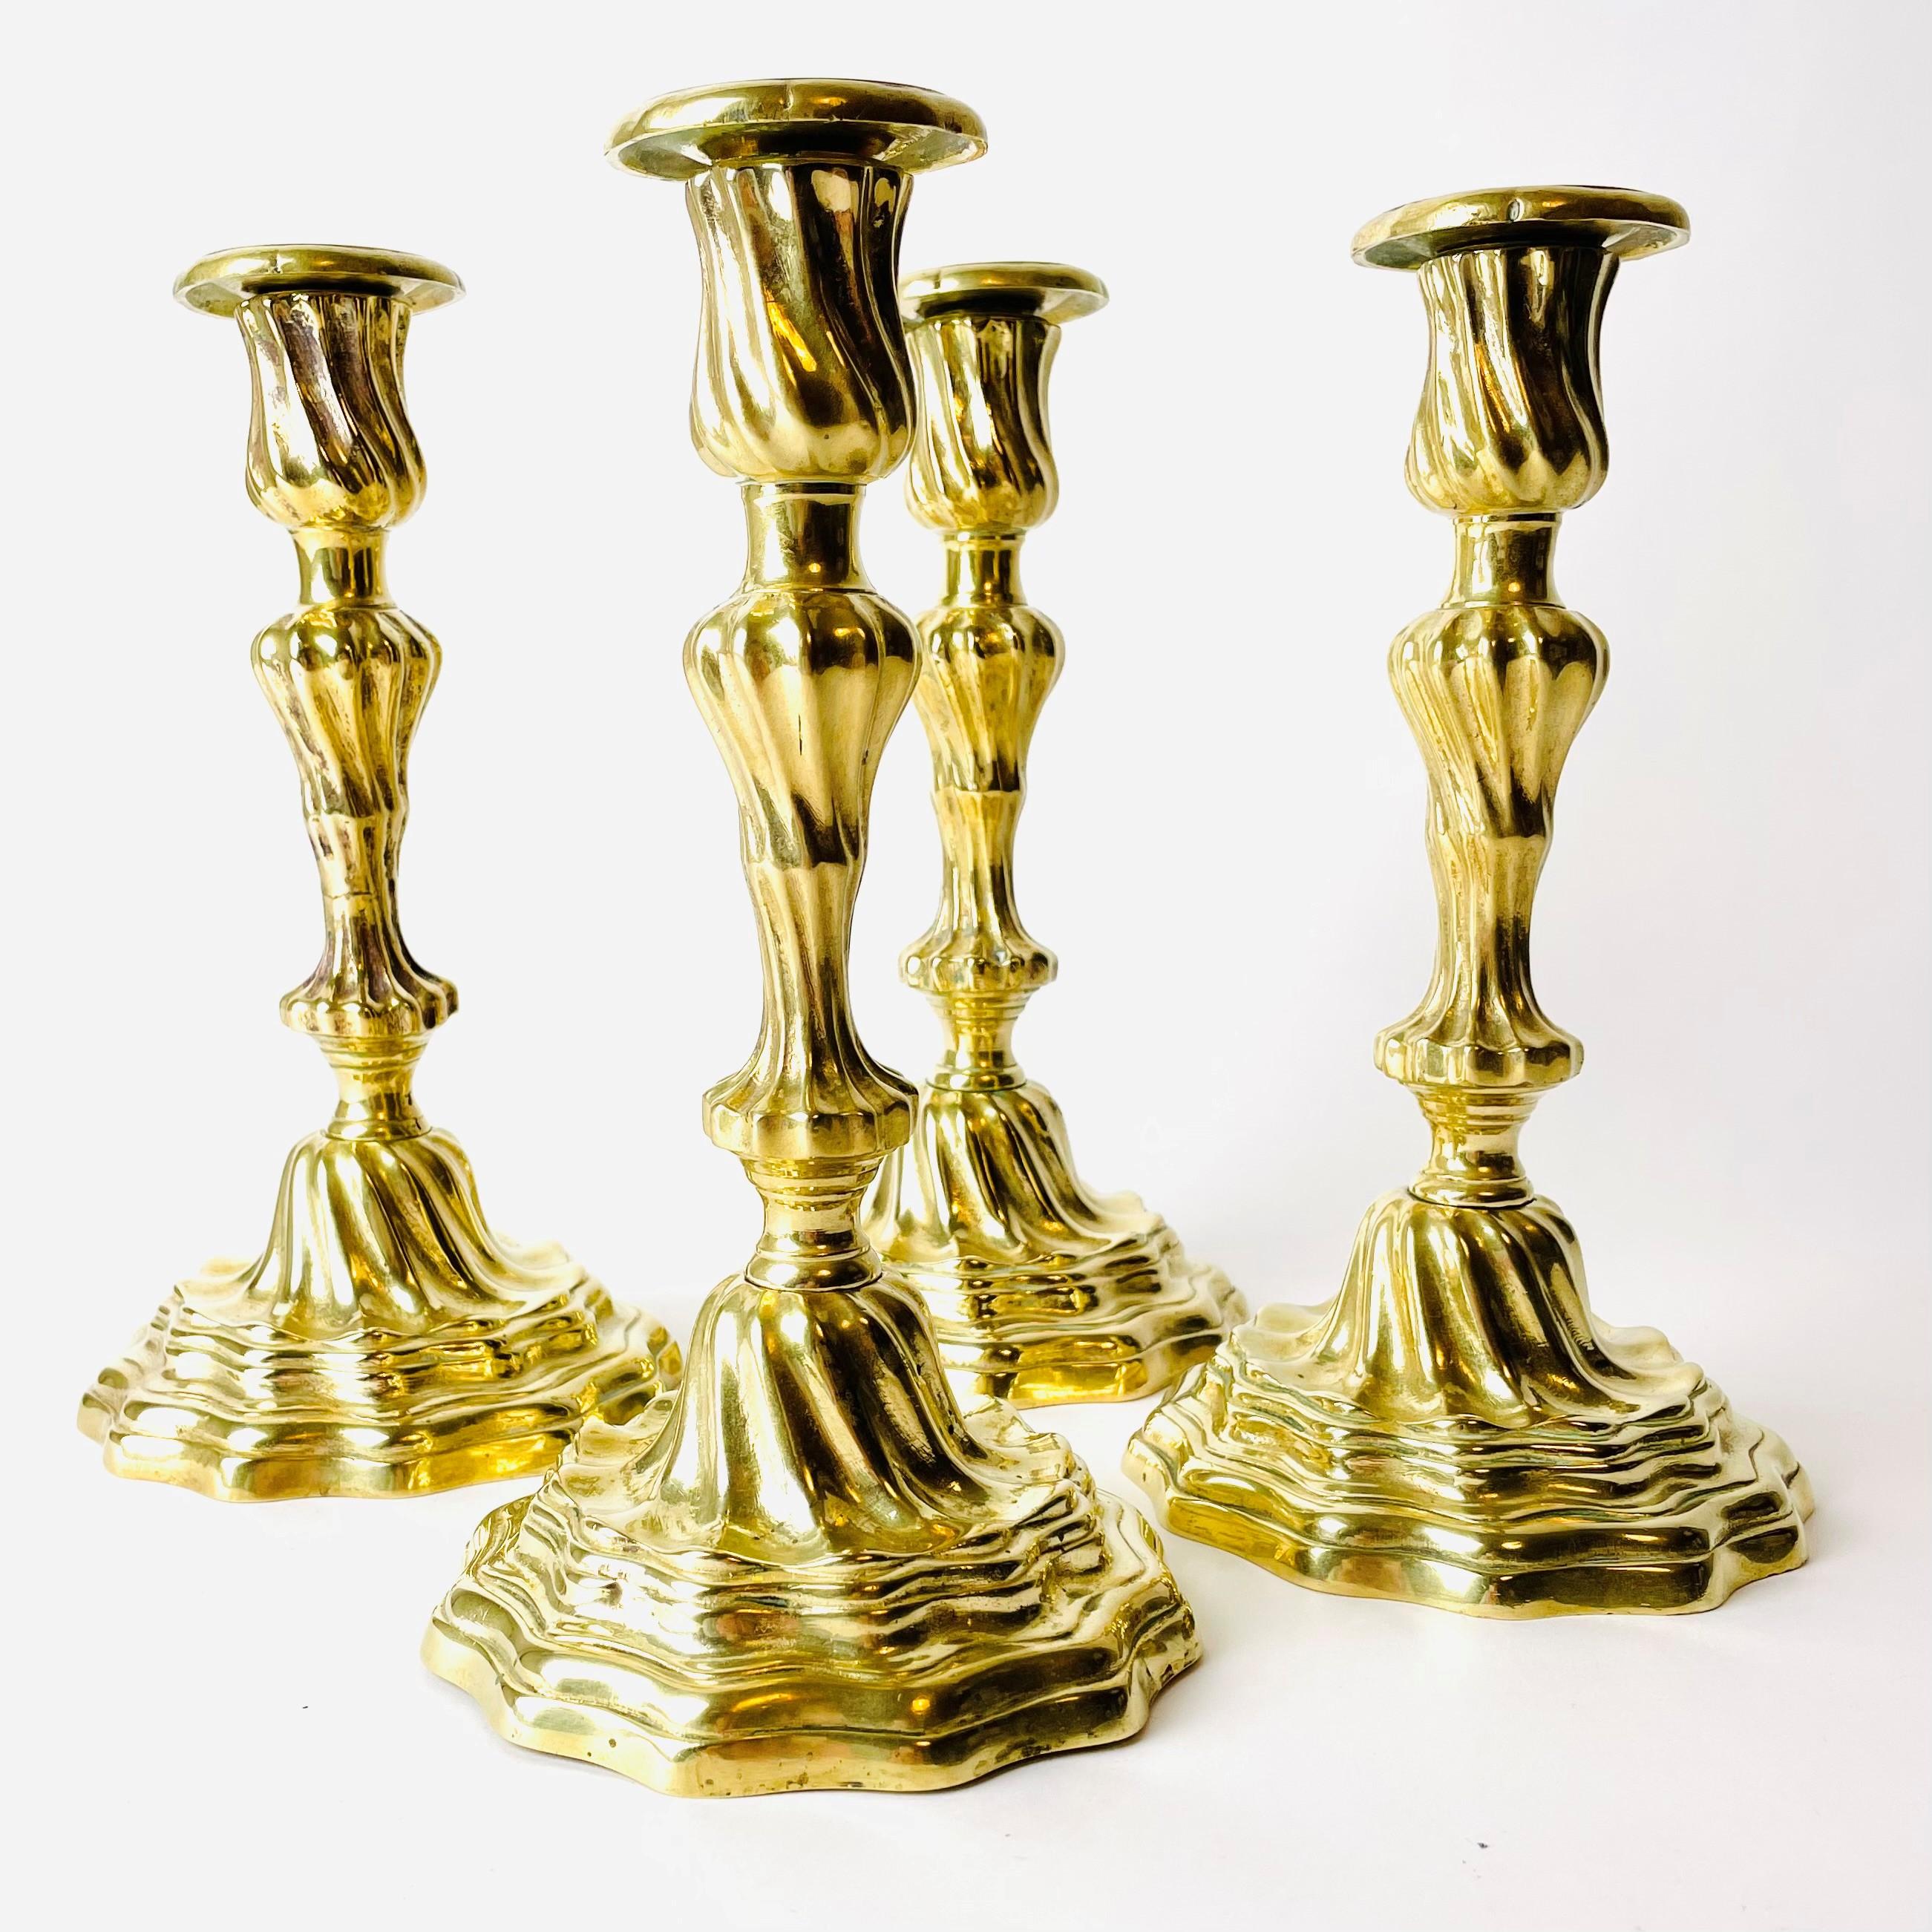 Vier schöne und sehr seltene Kerzenständer in vergoldeter Bronze aus den 1760er Jahren in Louis XV. Wahrscheinlich in Paris hergestellt. Provenienz aus der Banque de France, komplett mit Inventarnummer der Banque.

Diese schönen Louis